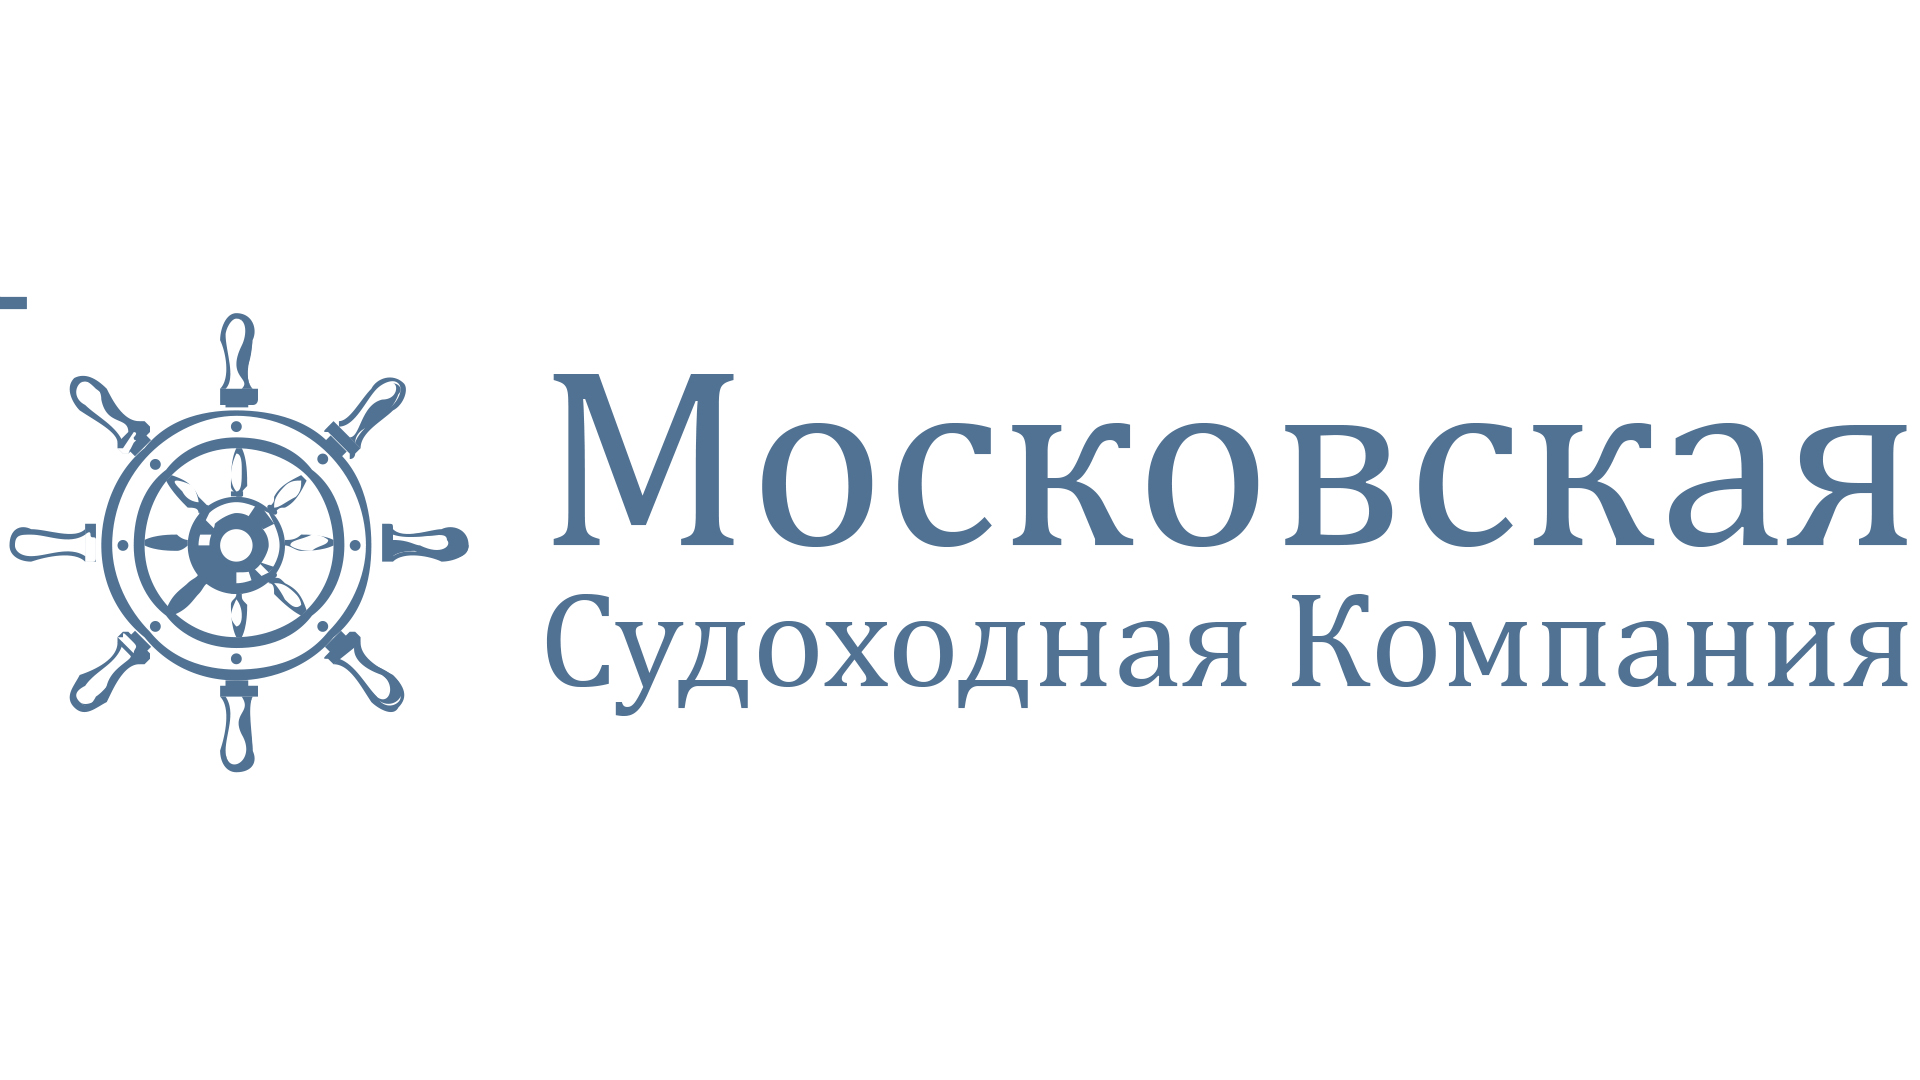 Московская судоходная компания